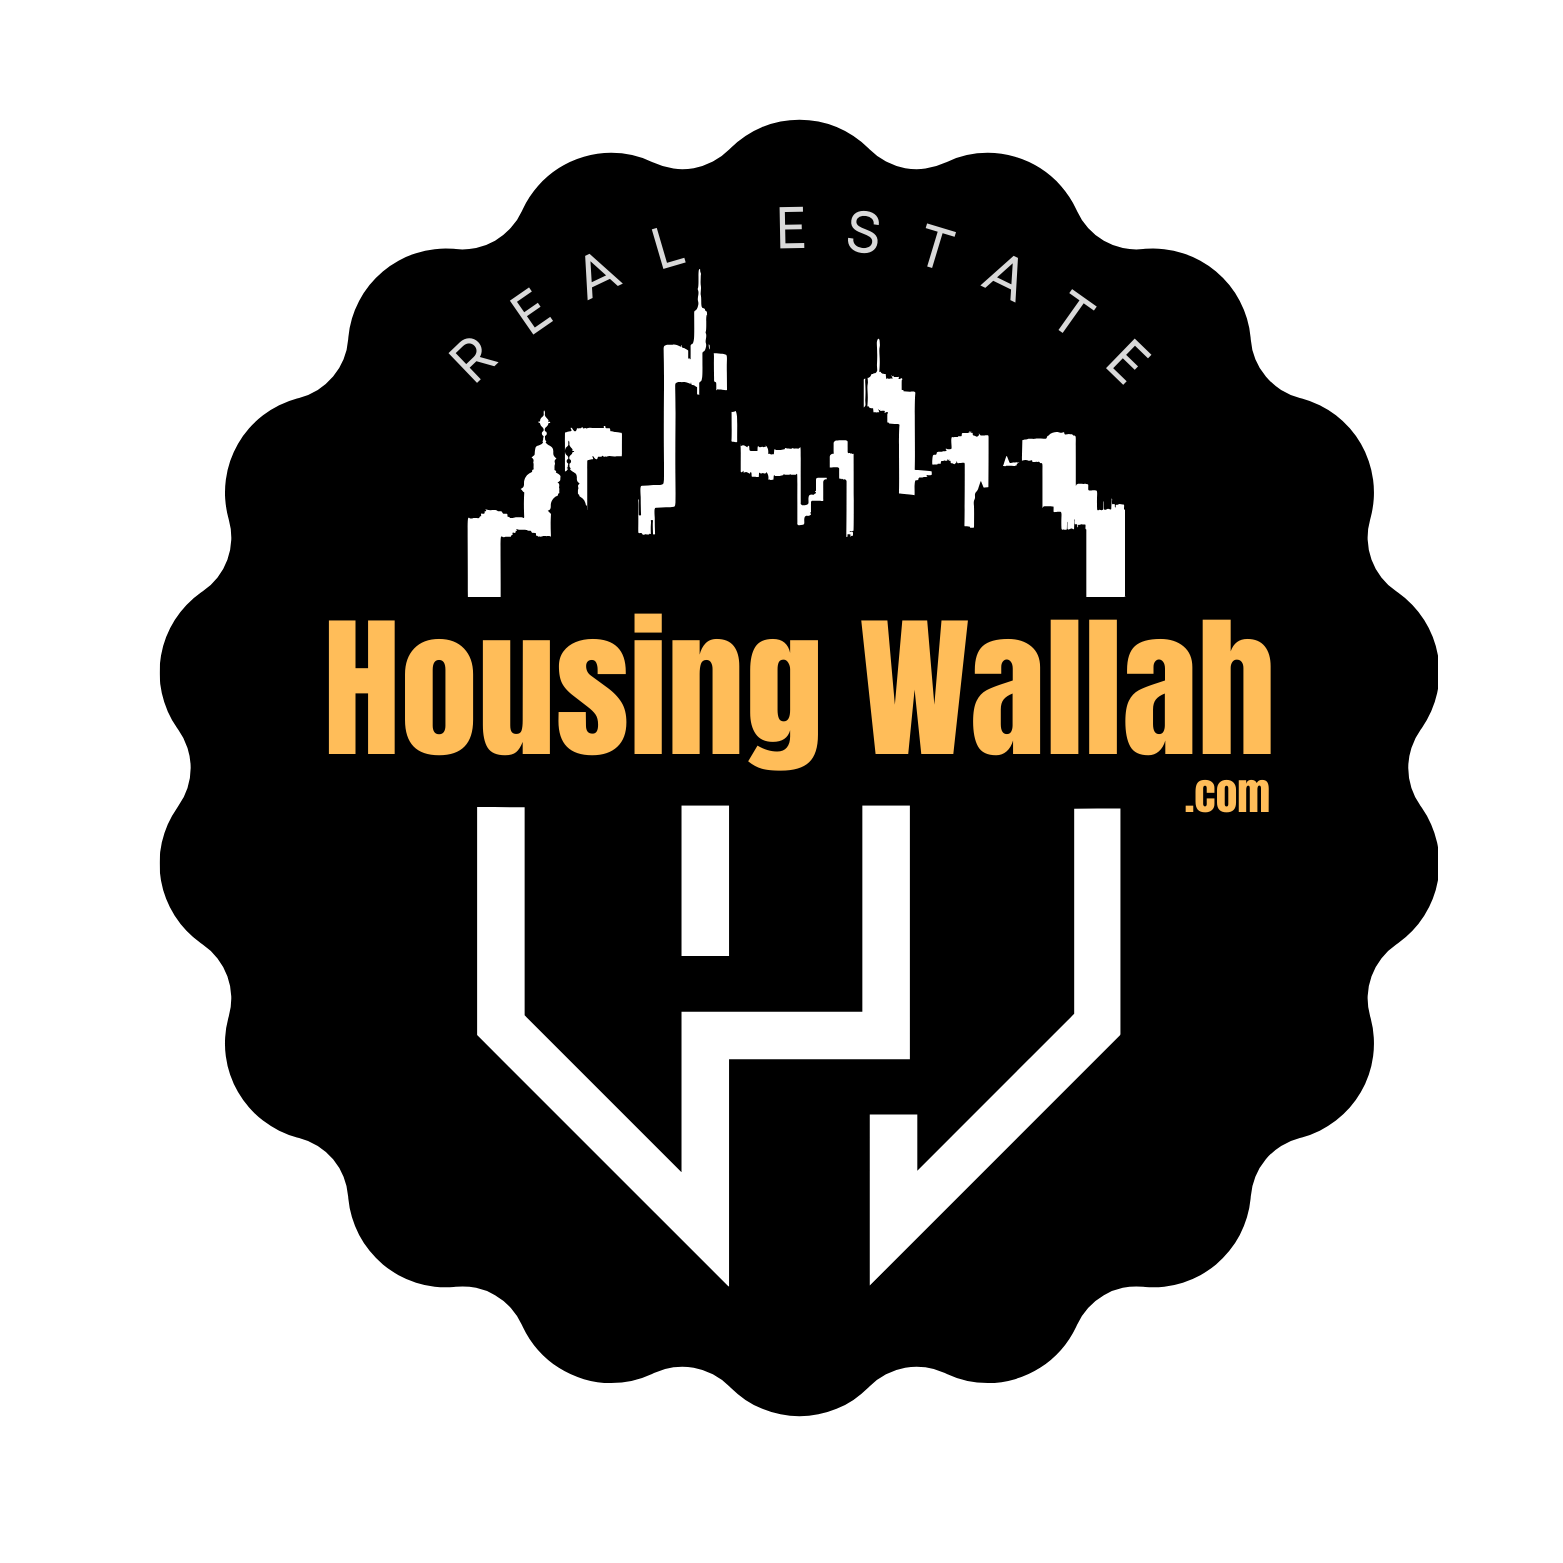 Housing Wallah Home Buying Make Simplified